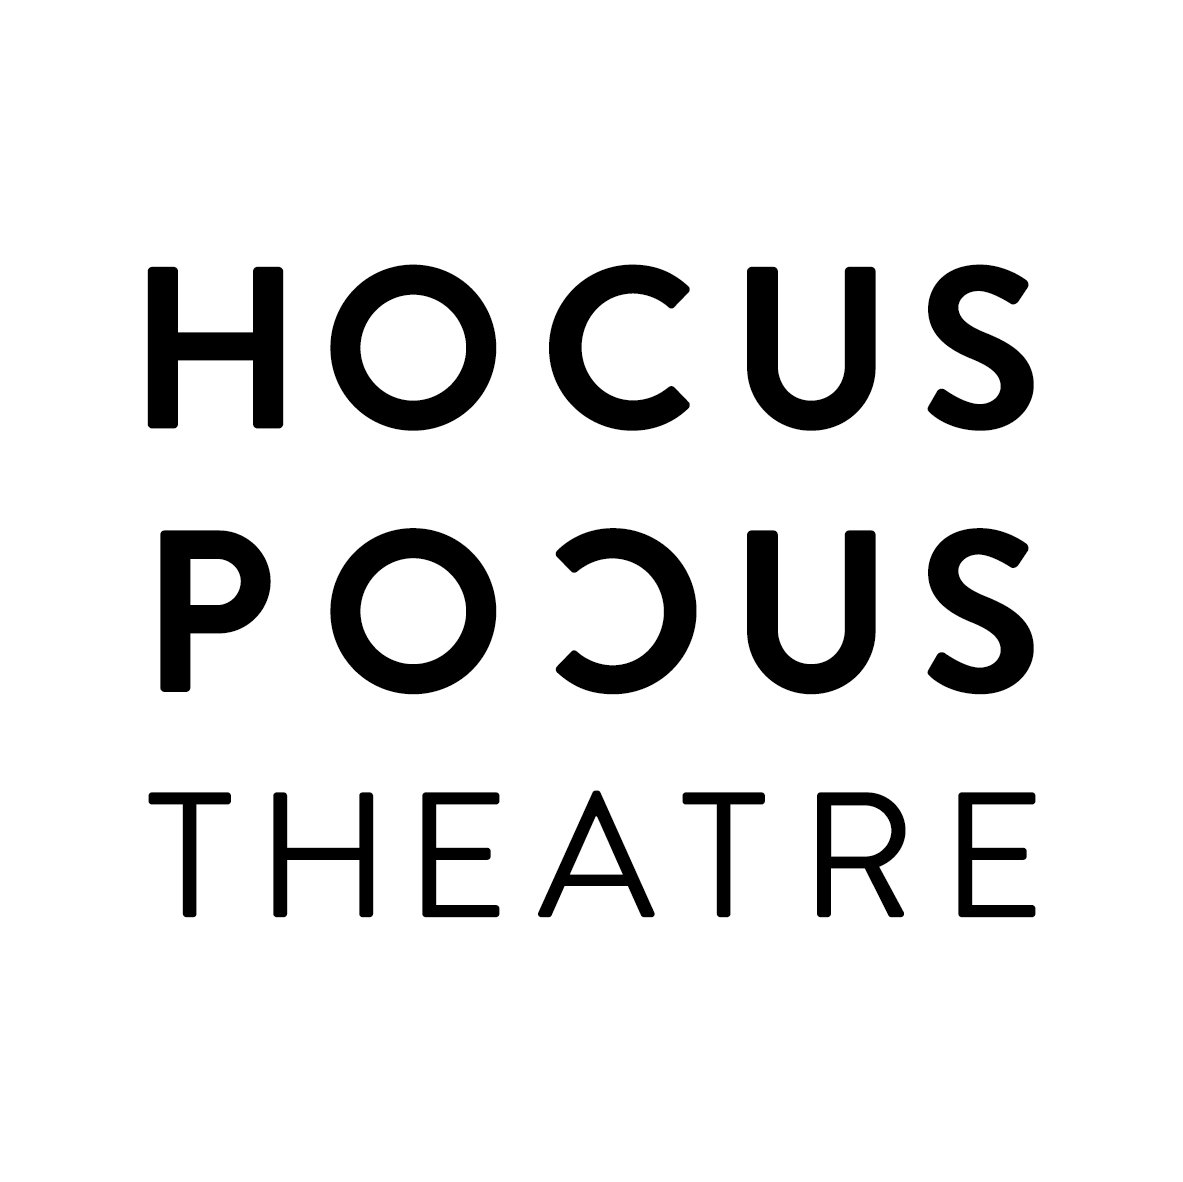 Hocus Pocus Theatre